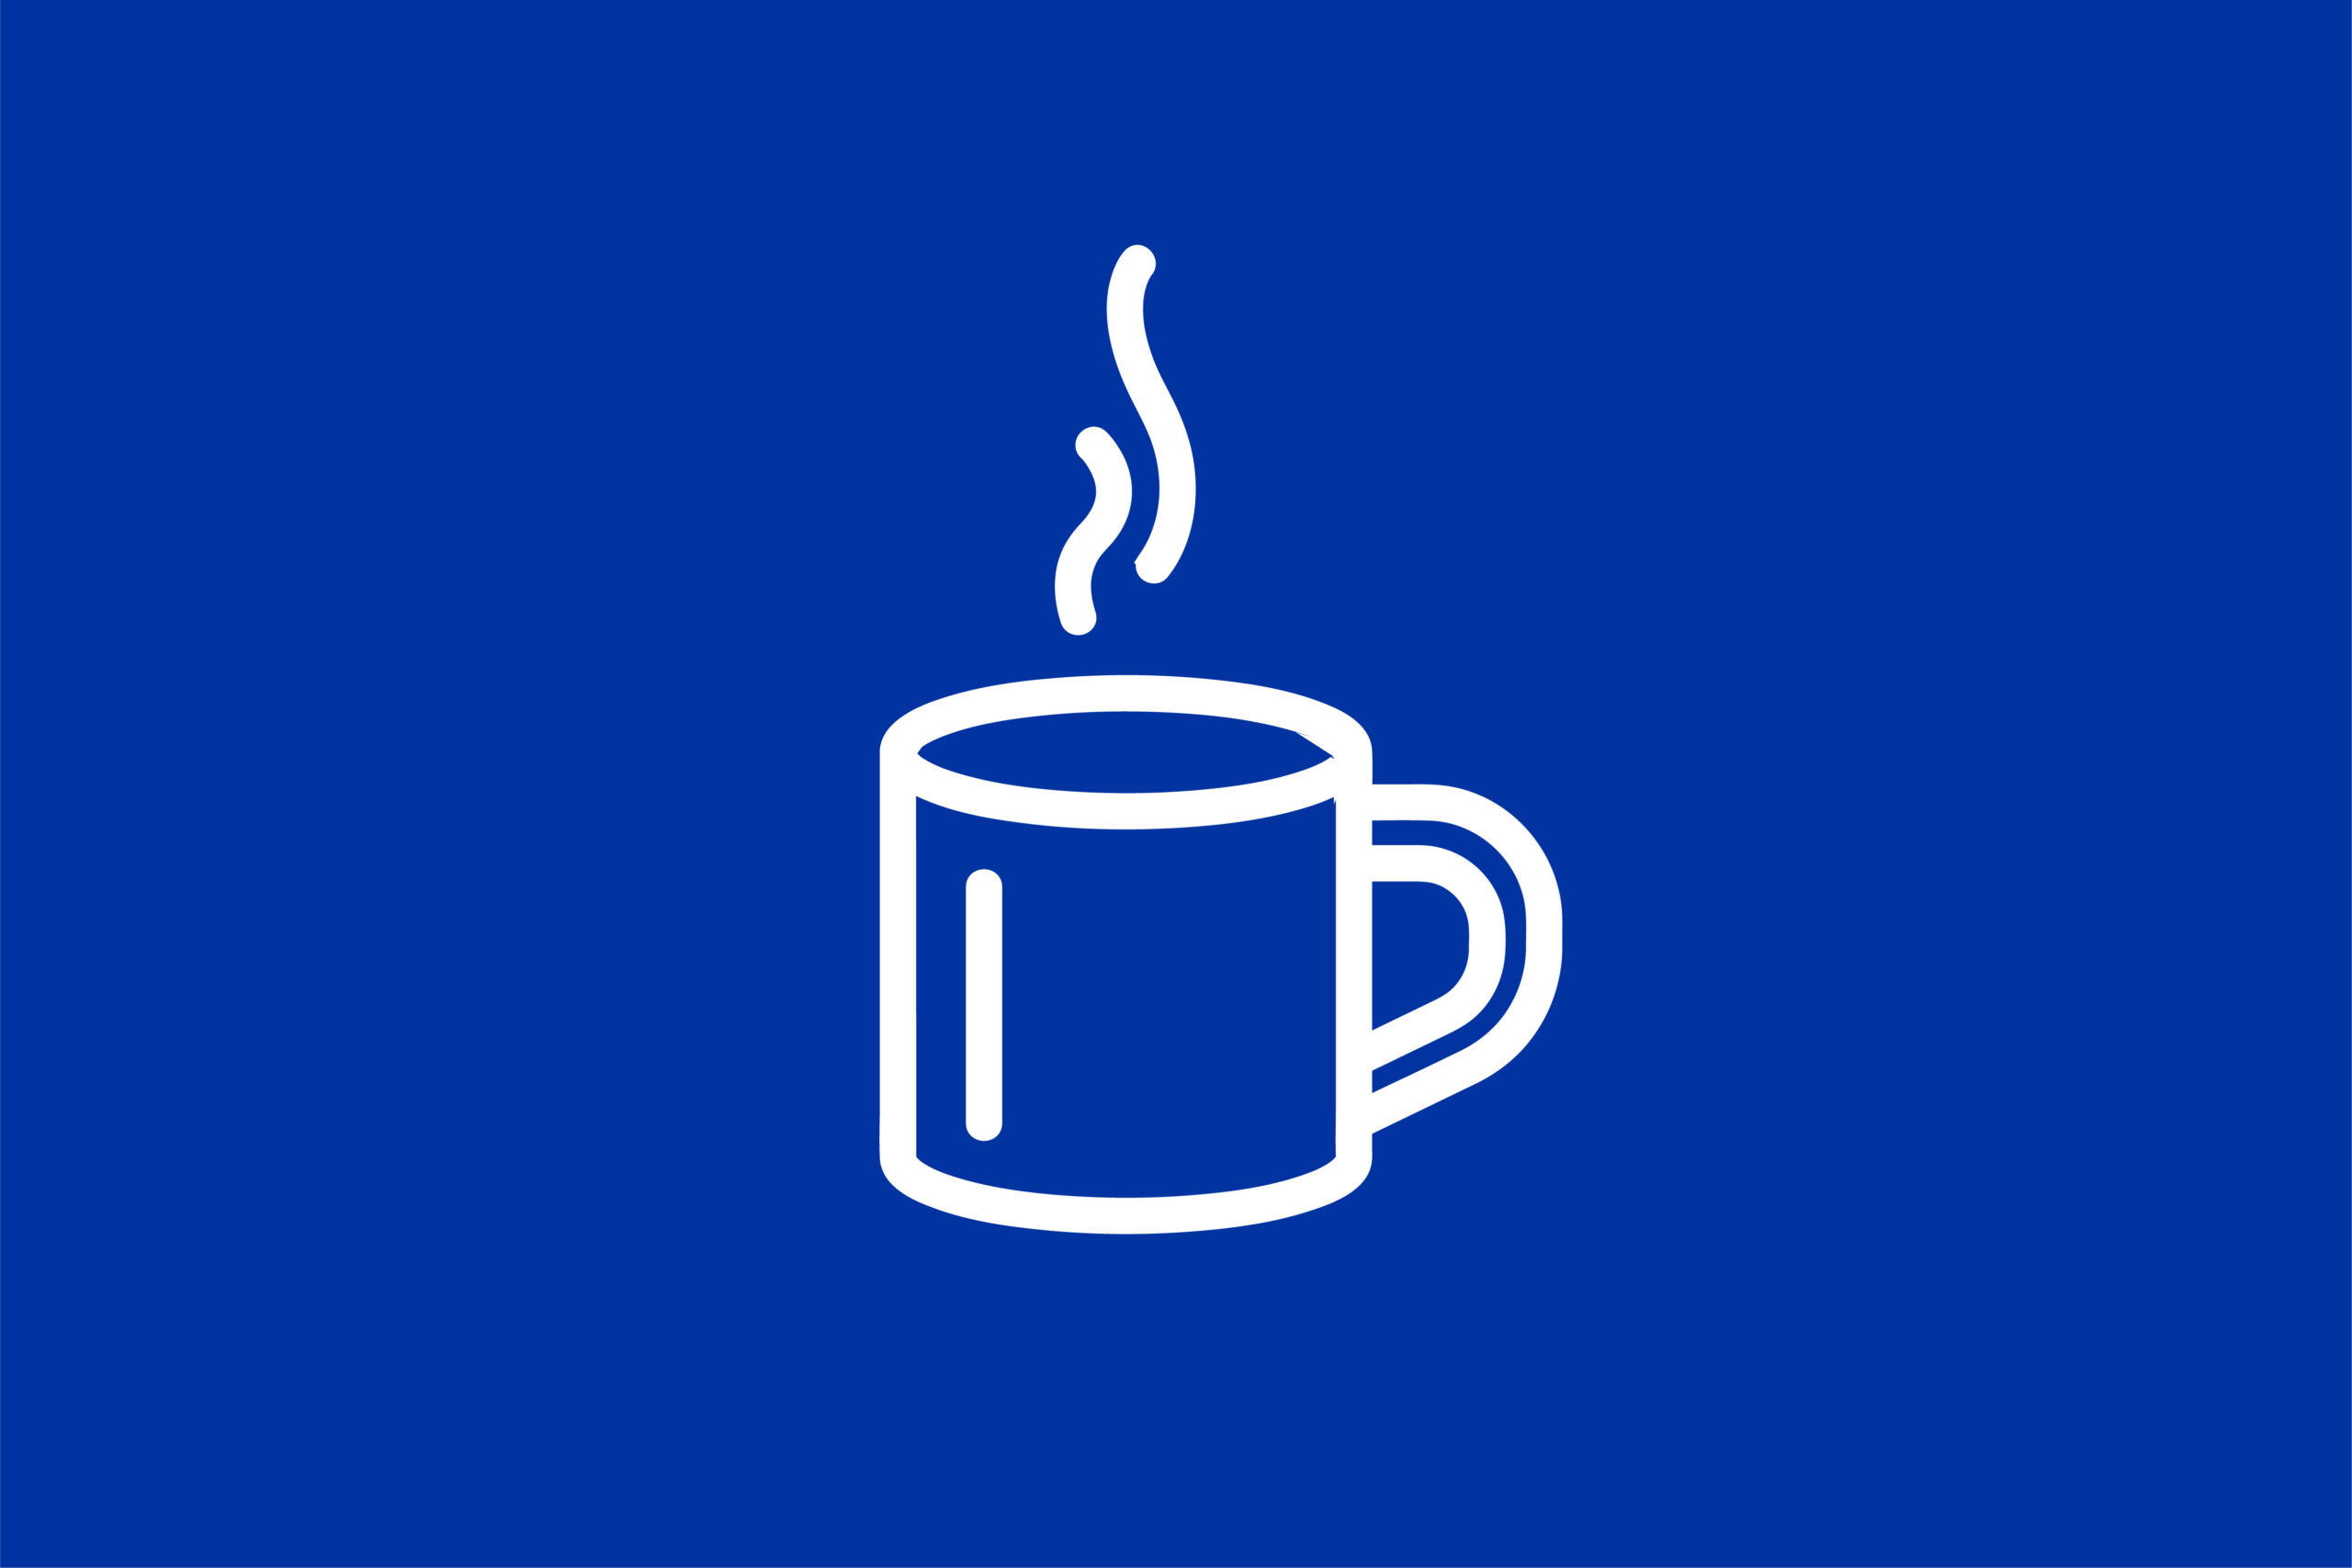 white mug image on a blue background